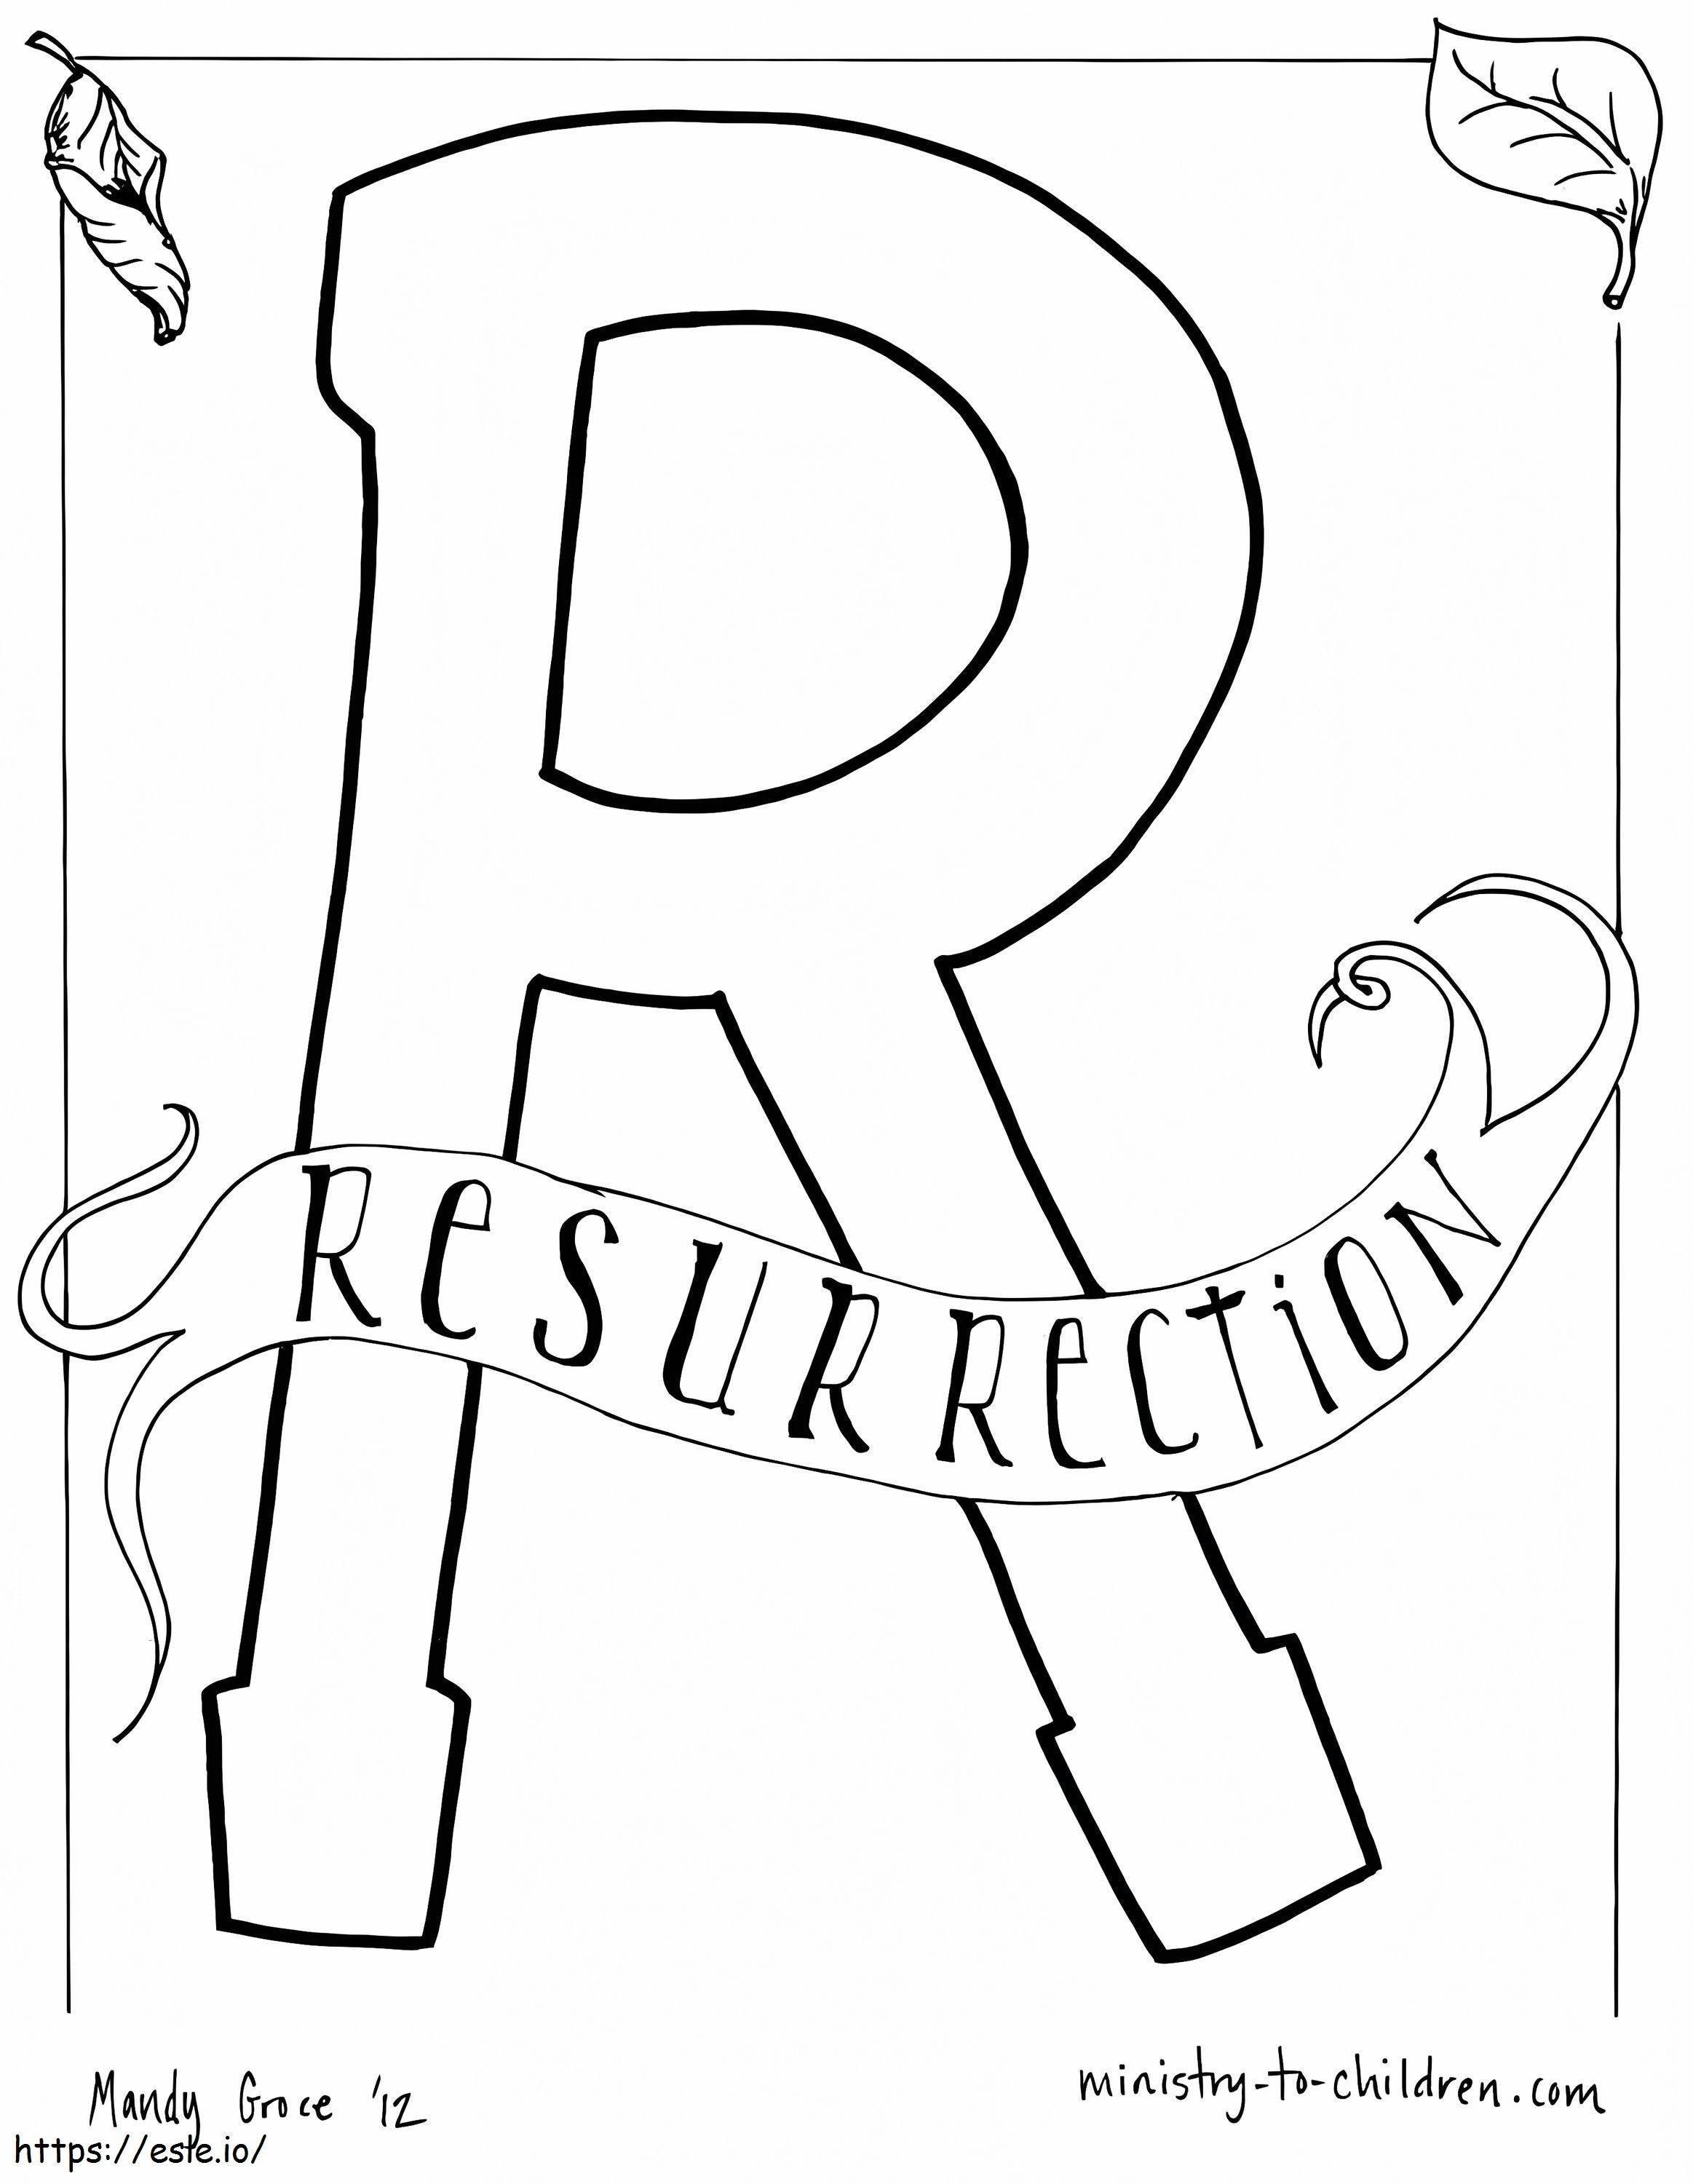 R es para la resurrección para colorear